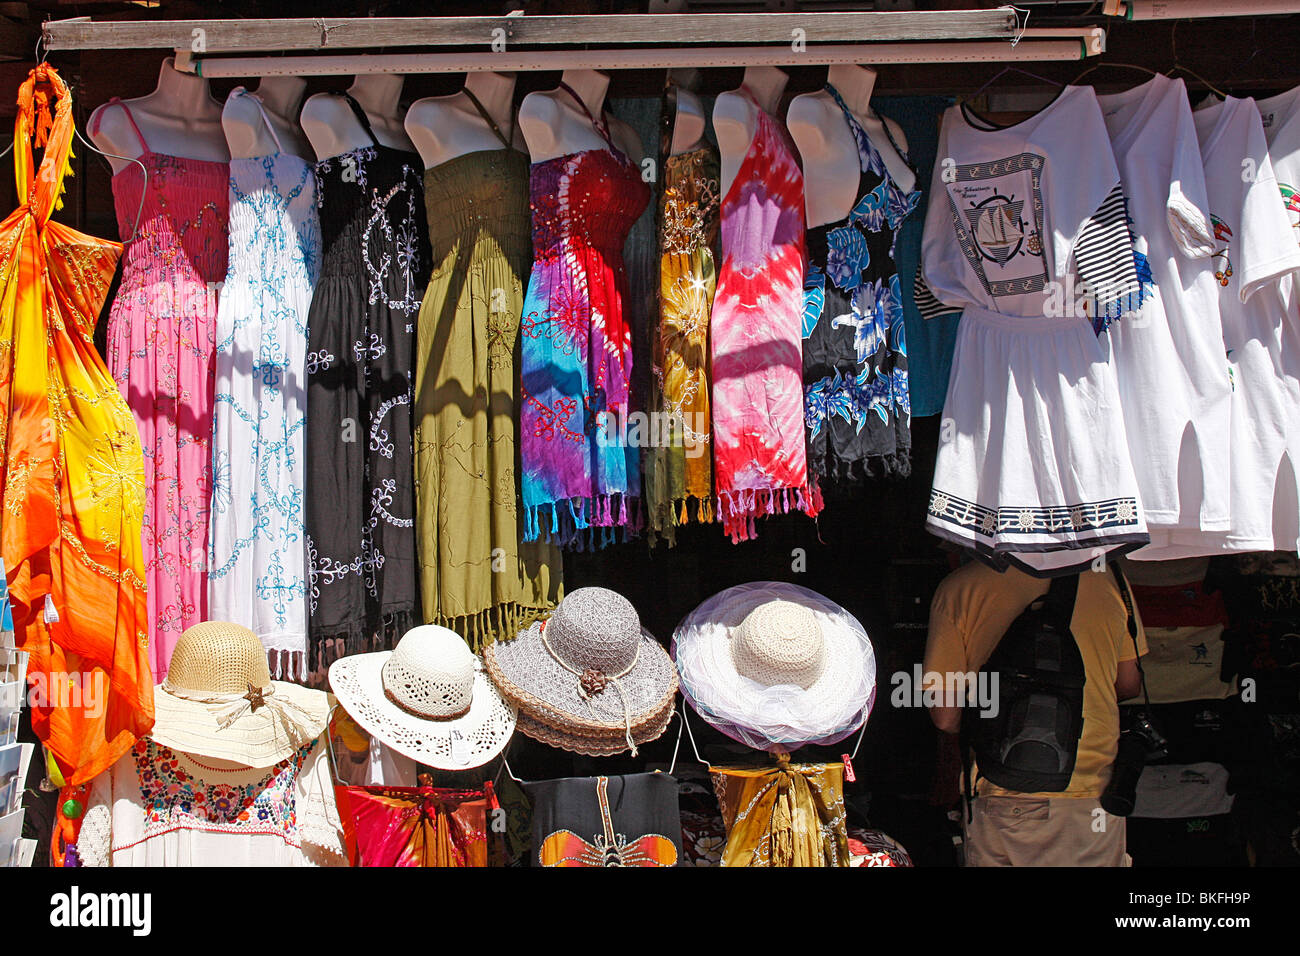 Des vêtements colorés et de boutiques pour le grand chapeau du marché touristique de Zihuantanejo dans Guerrero, Mexique. Banque D'Images